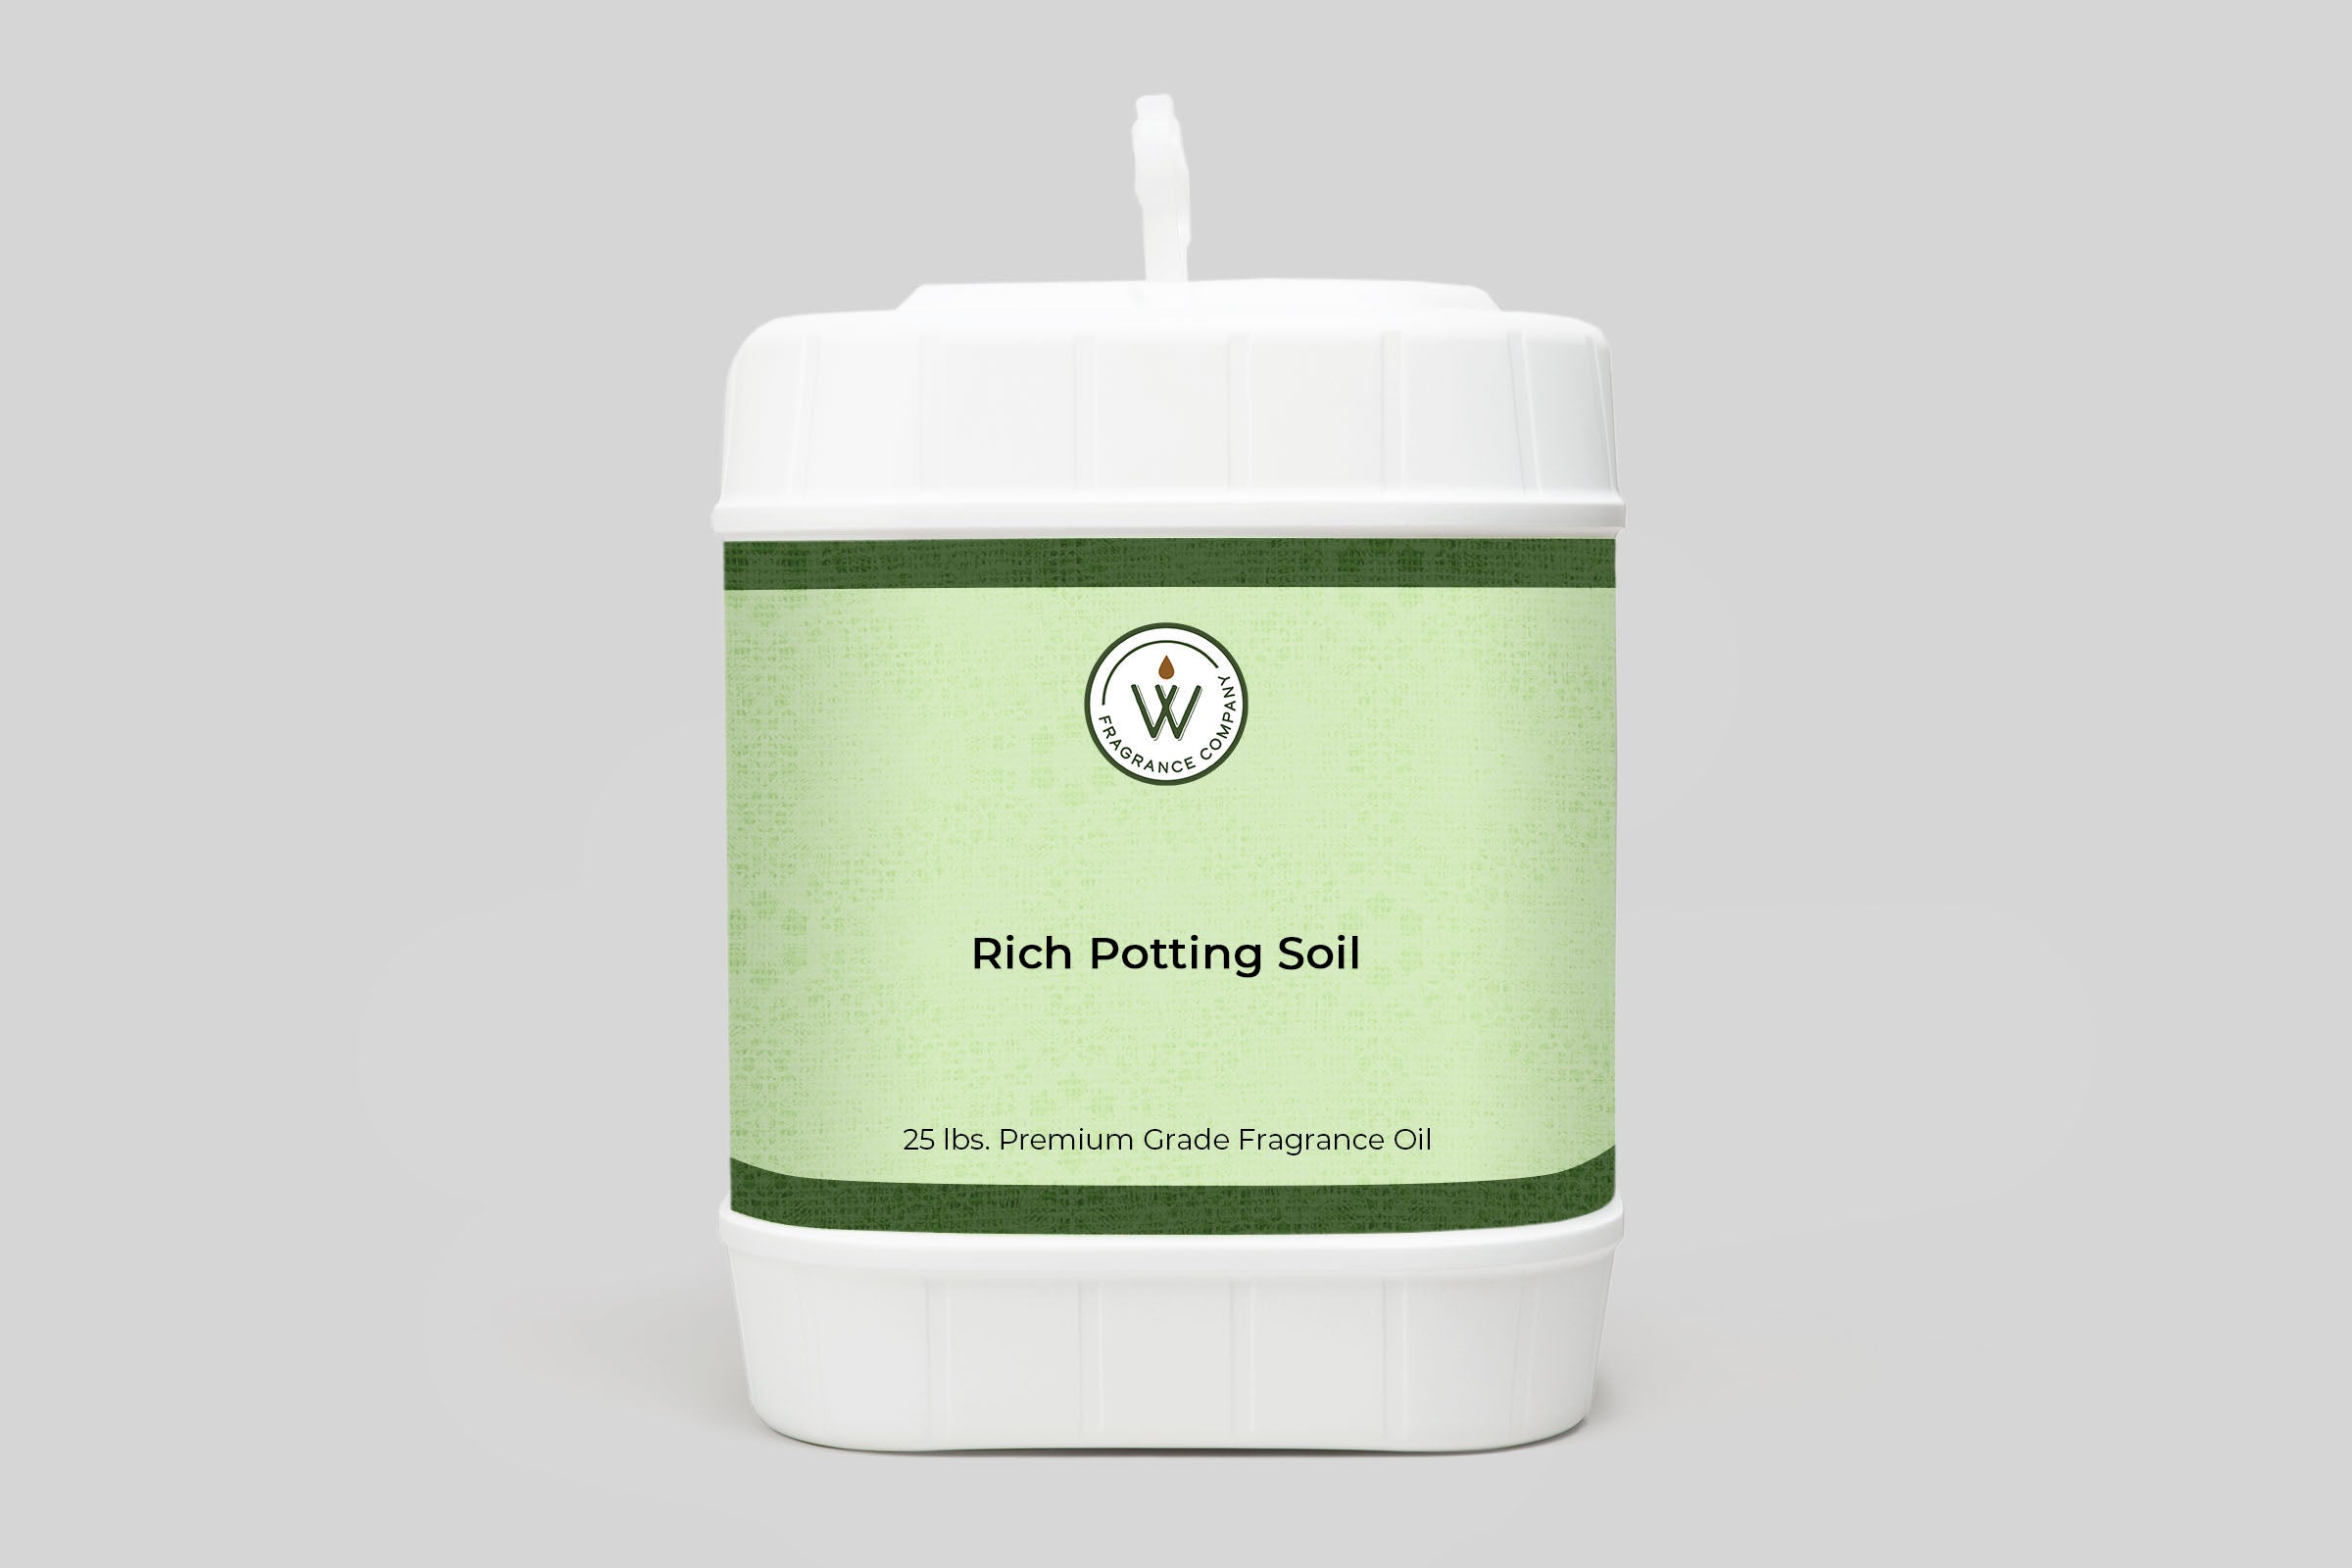 Rich Potting Soil Fragrance Oil